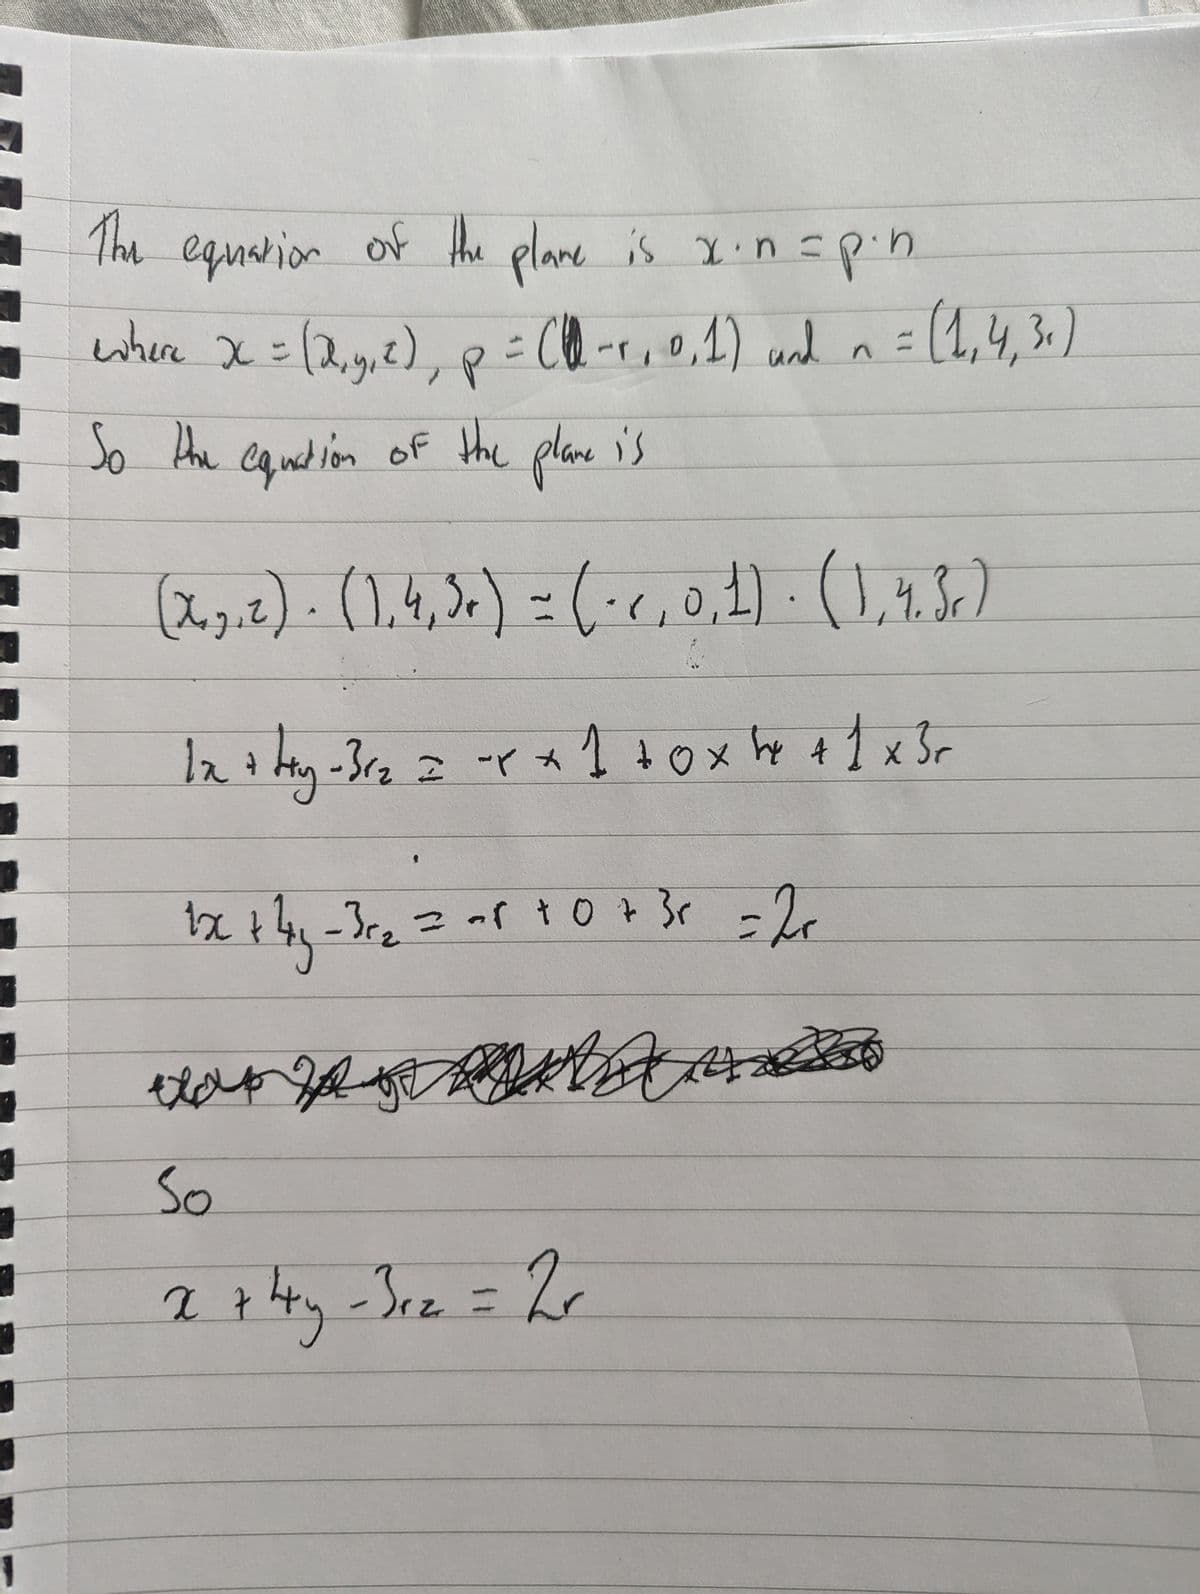 1
The equation of the plane is x. n = p.n.
where x = (x, y, z), p = (-1, 0, 1) and n = (1,4,3)
So the equation of the plane is
(x, z) · (1,4,5) = (·<, 0, 1) · (1,4.3.)
A
1x + ty- 31₂ = x + 1 +0x x + 1 x 3 r
Hy
1x + 4y - 3 r₂ = -8 +0 + 3 x = 2+
x+4y-3c₂
So
x + 4y - 3r₂ = 2r
4